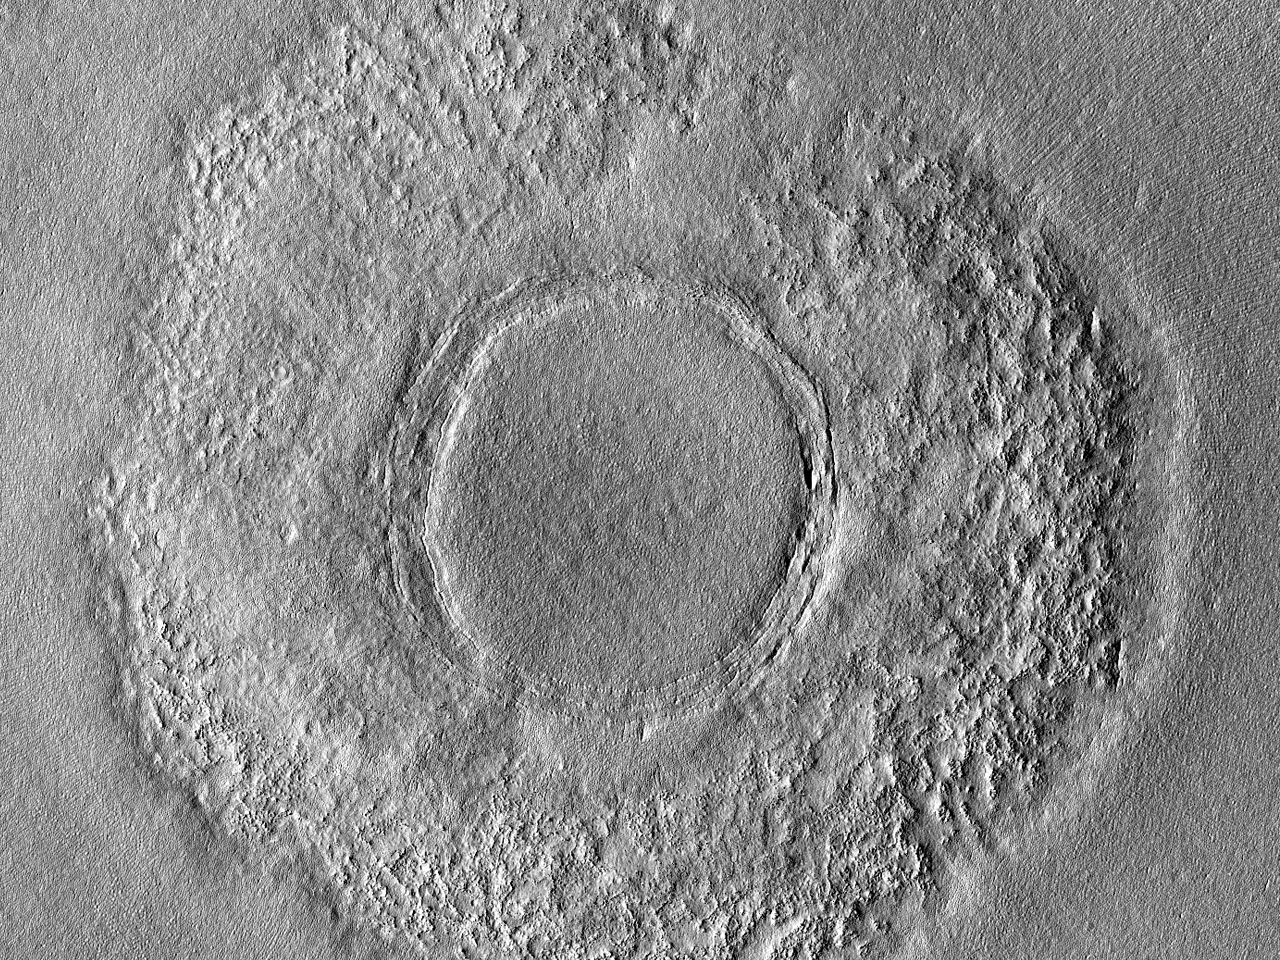 北"Arcadia Planitia"地区的环形构造